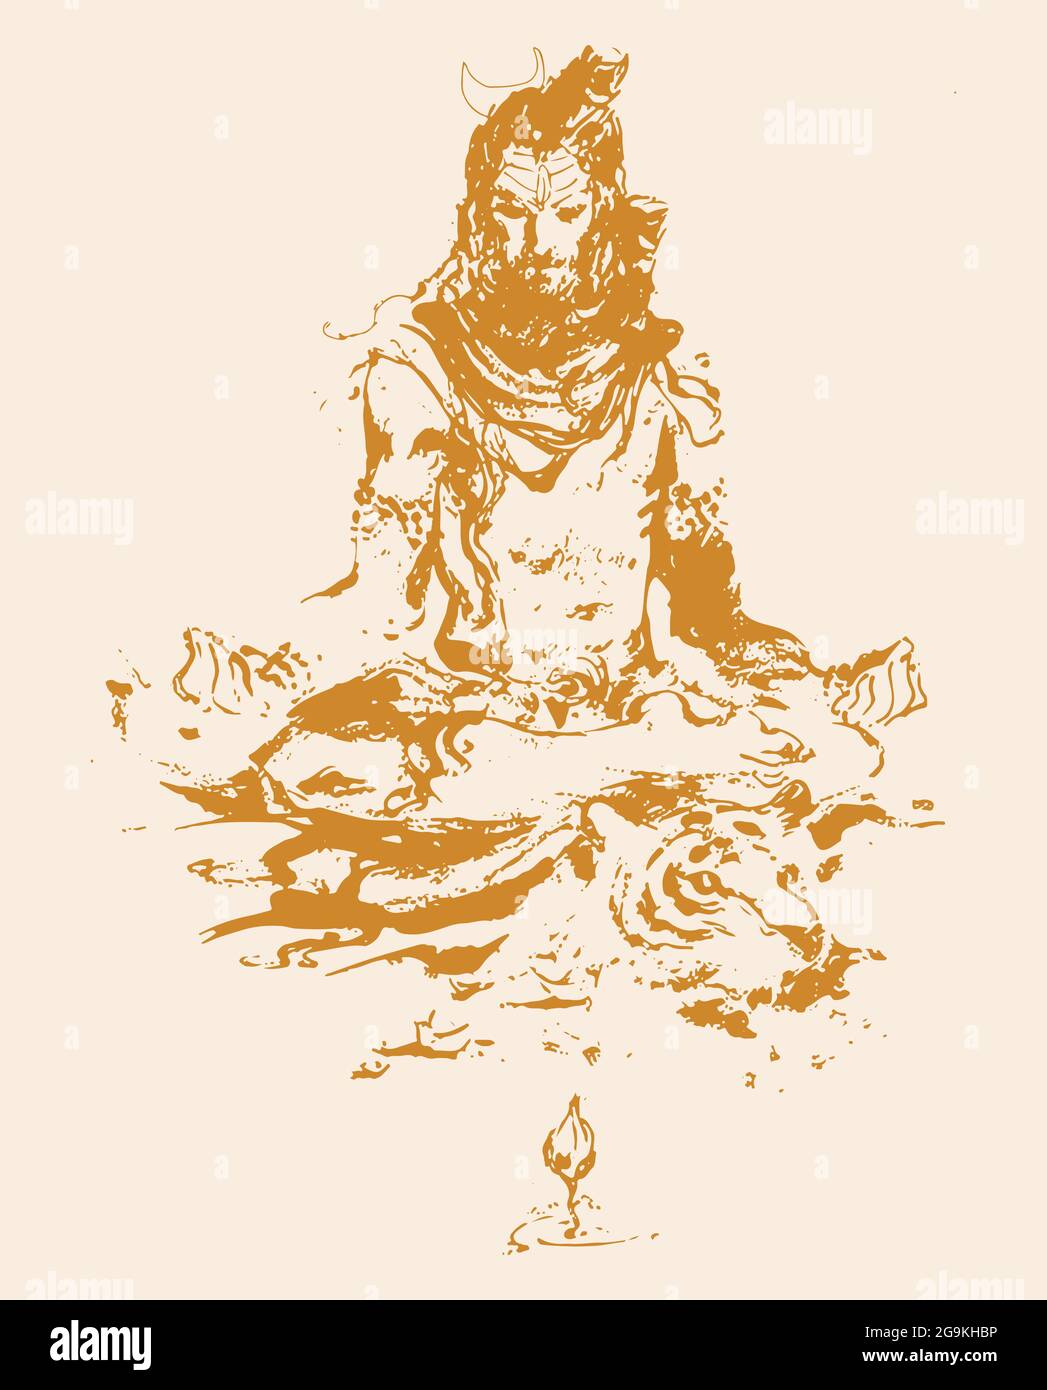 Schizzo del famoso e potente dio indiano Lord Shiva e dei suoi simboli con spazio libero per il testo Foto Stock